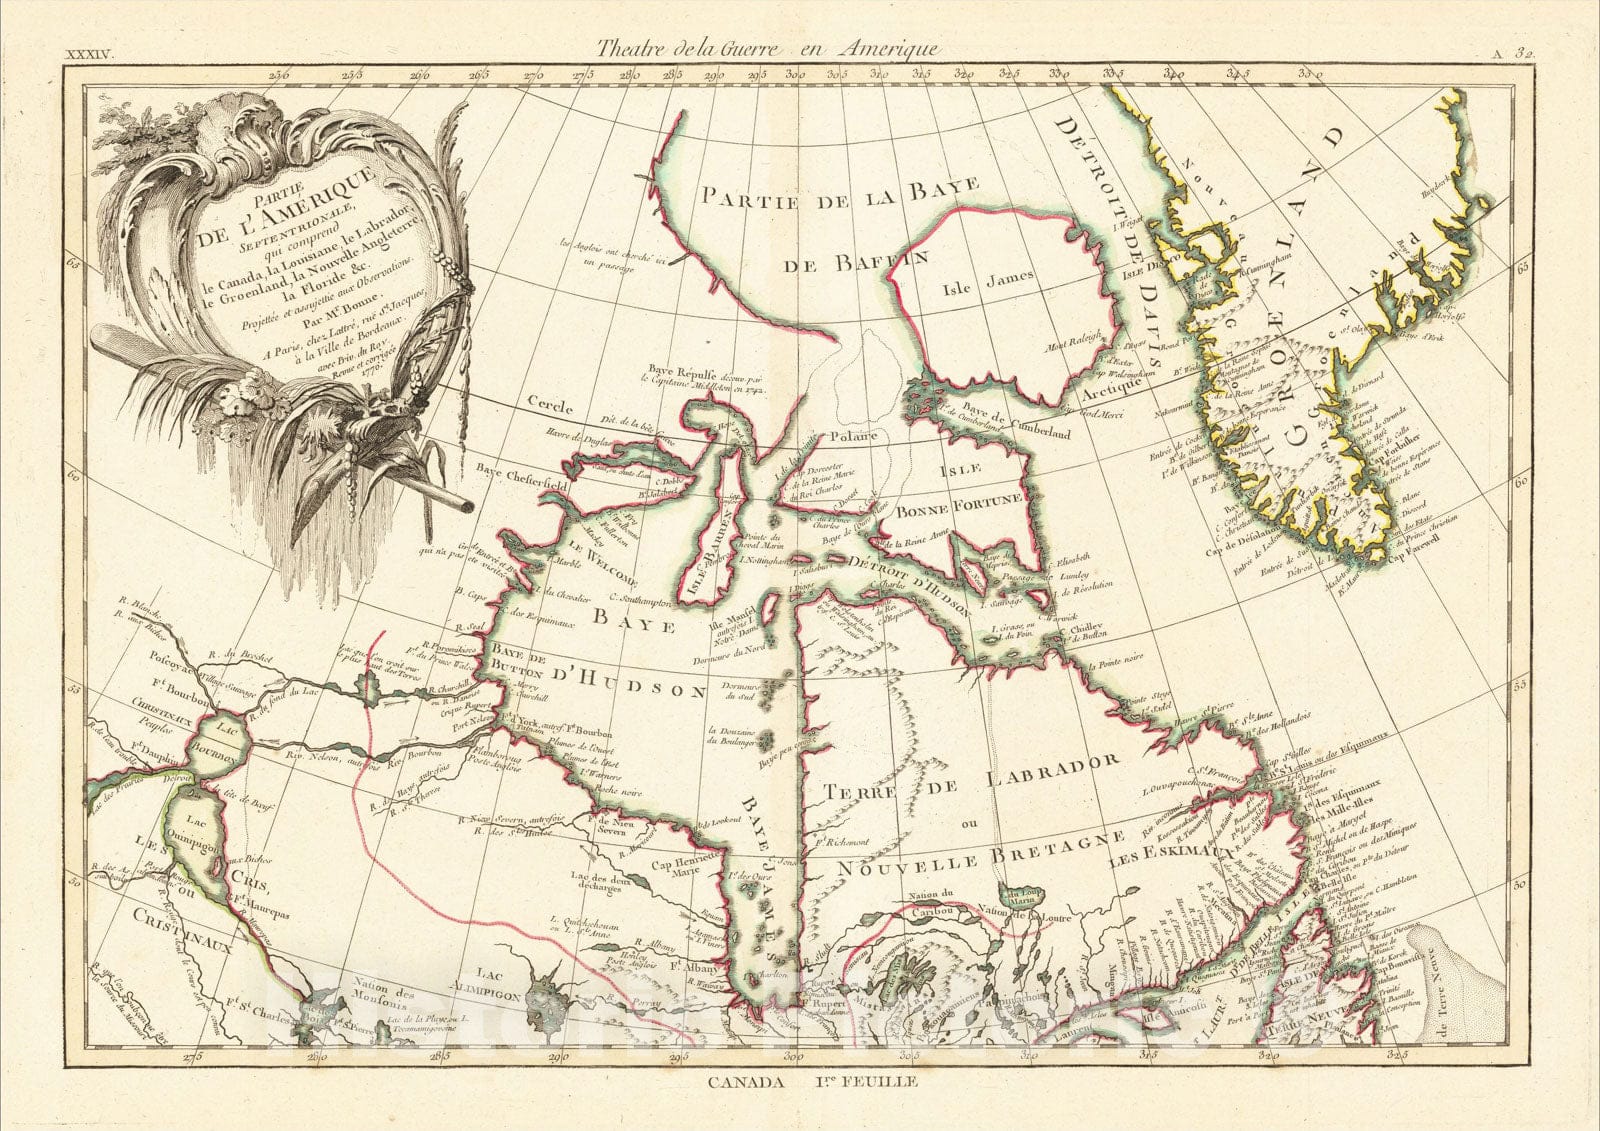 Historic Map : Partie De L'Amerique Septentrionale, qui comprend le Canada, la Louisiane, le Labrador, 1771, v1, Vintage Wall Art